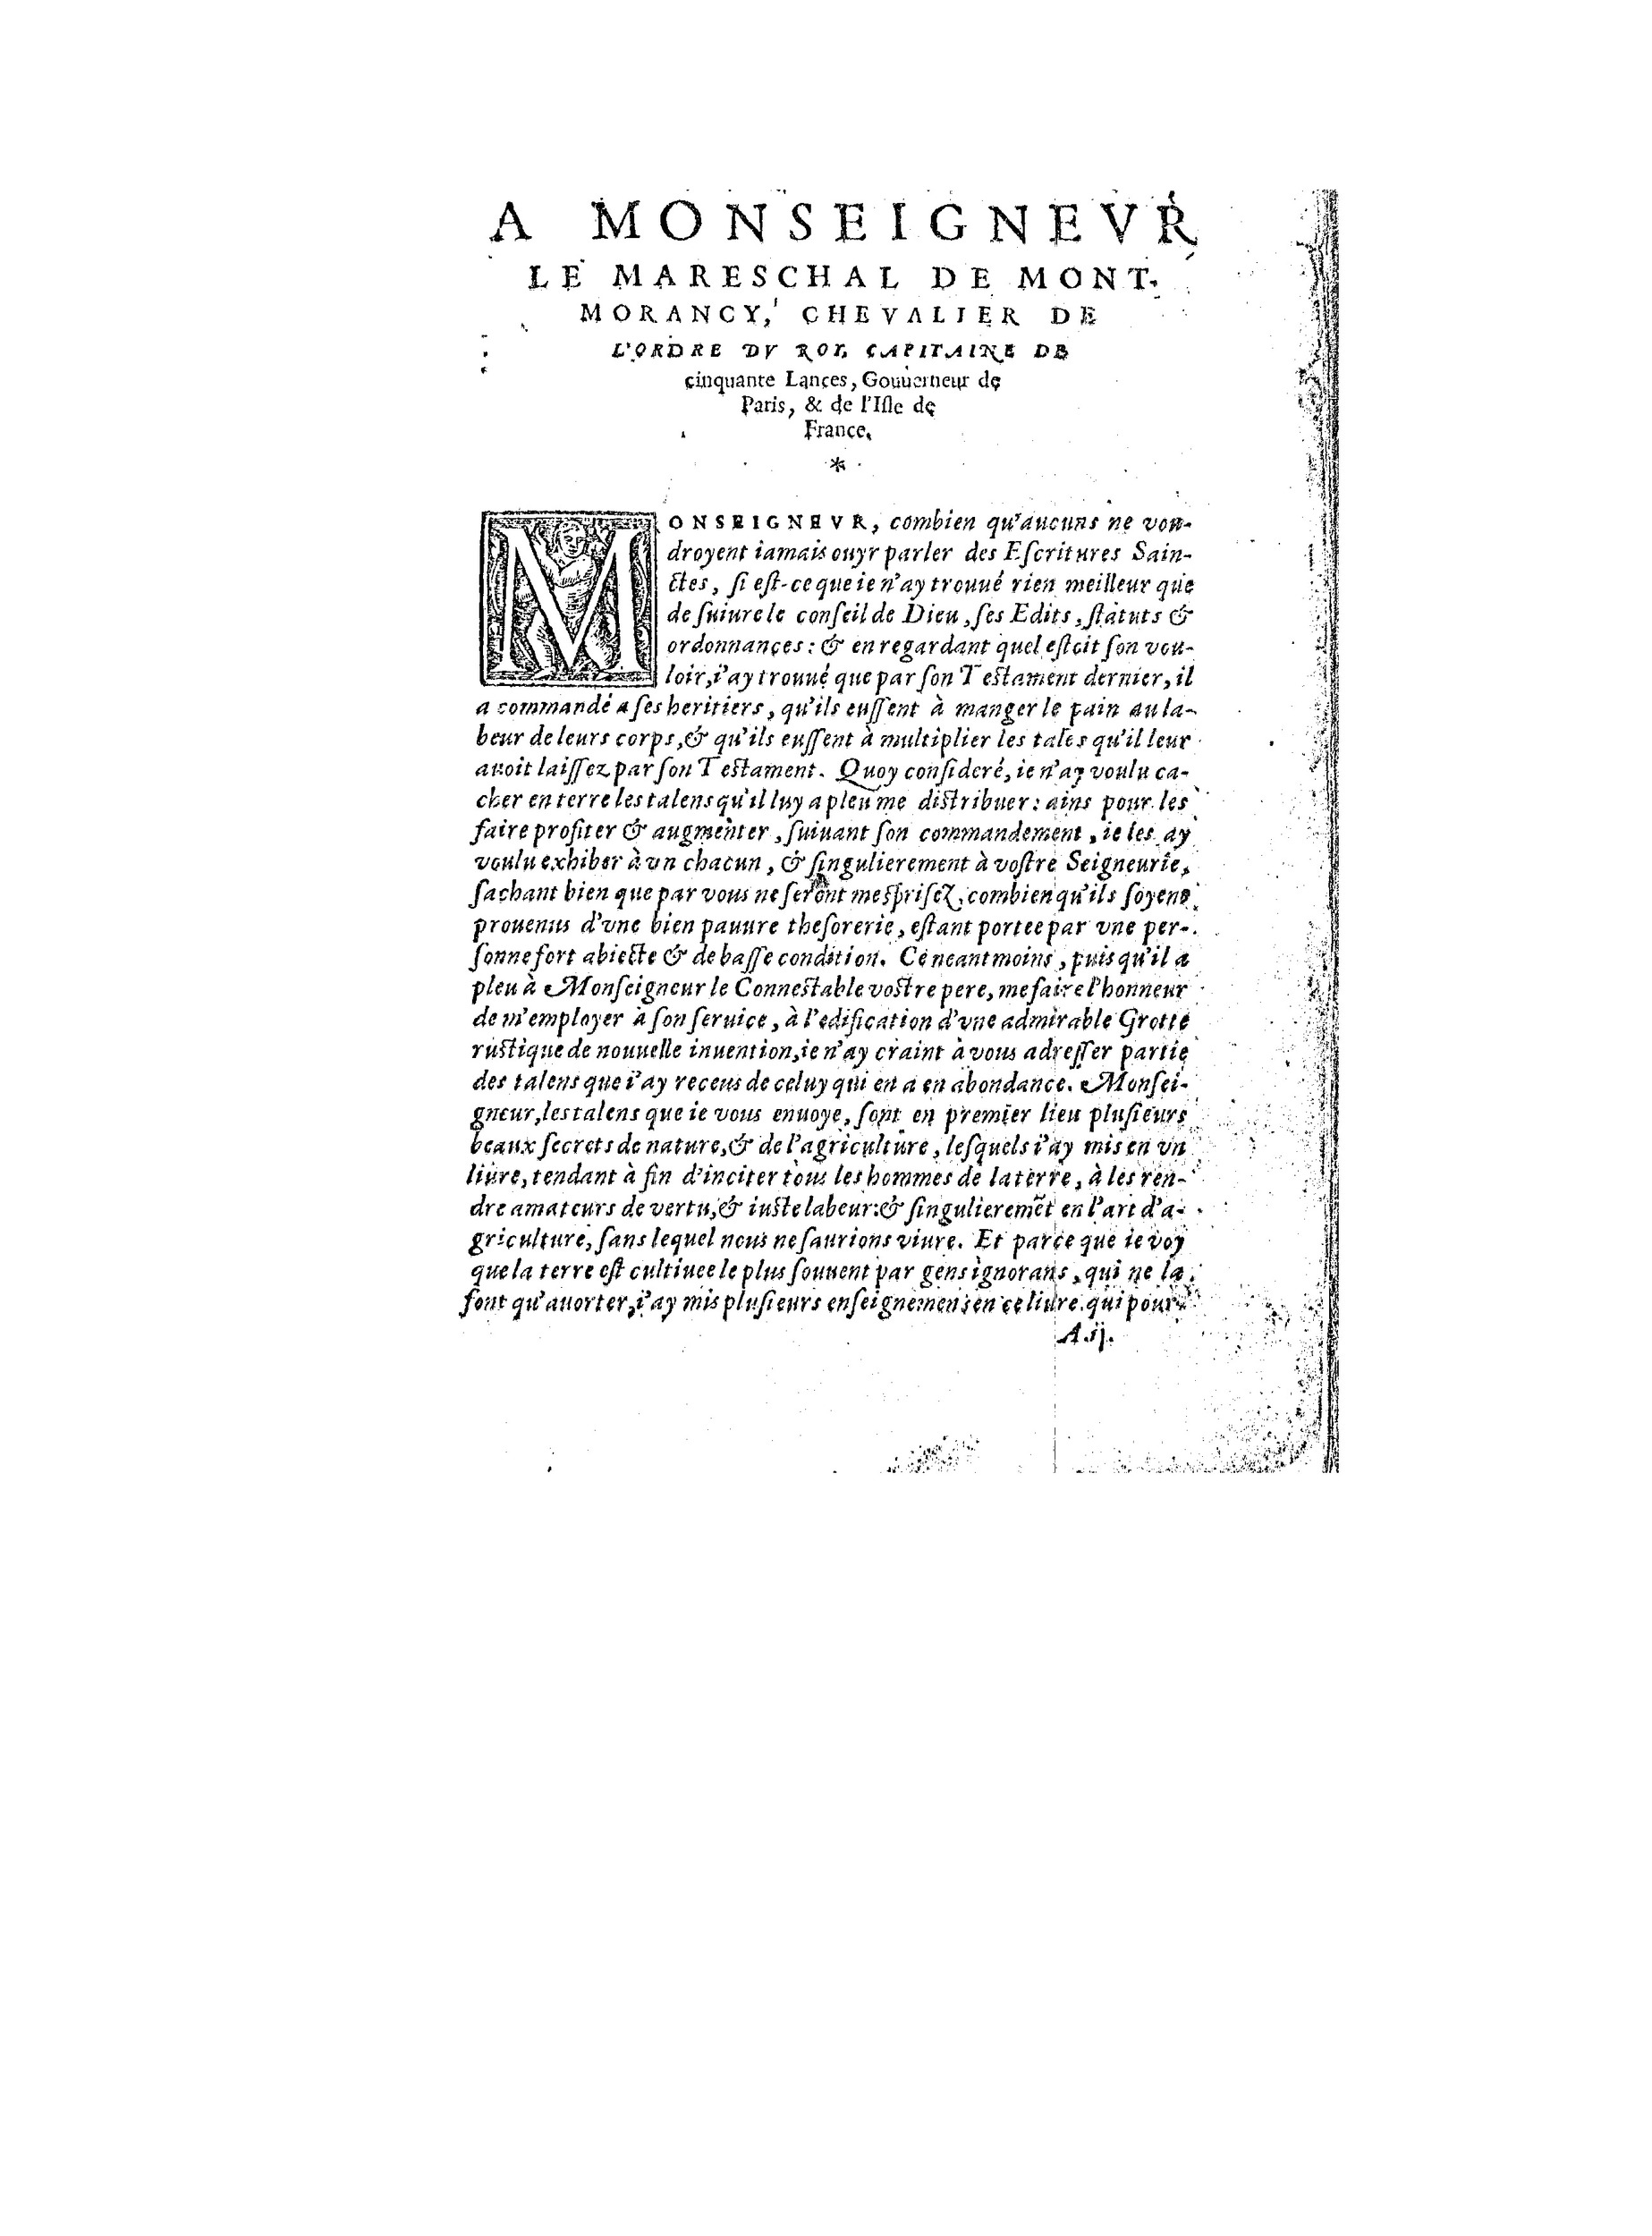 1563 Recepte veritable Berton_BNF_Page_006.jpg